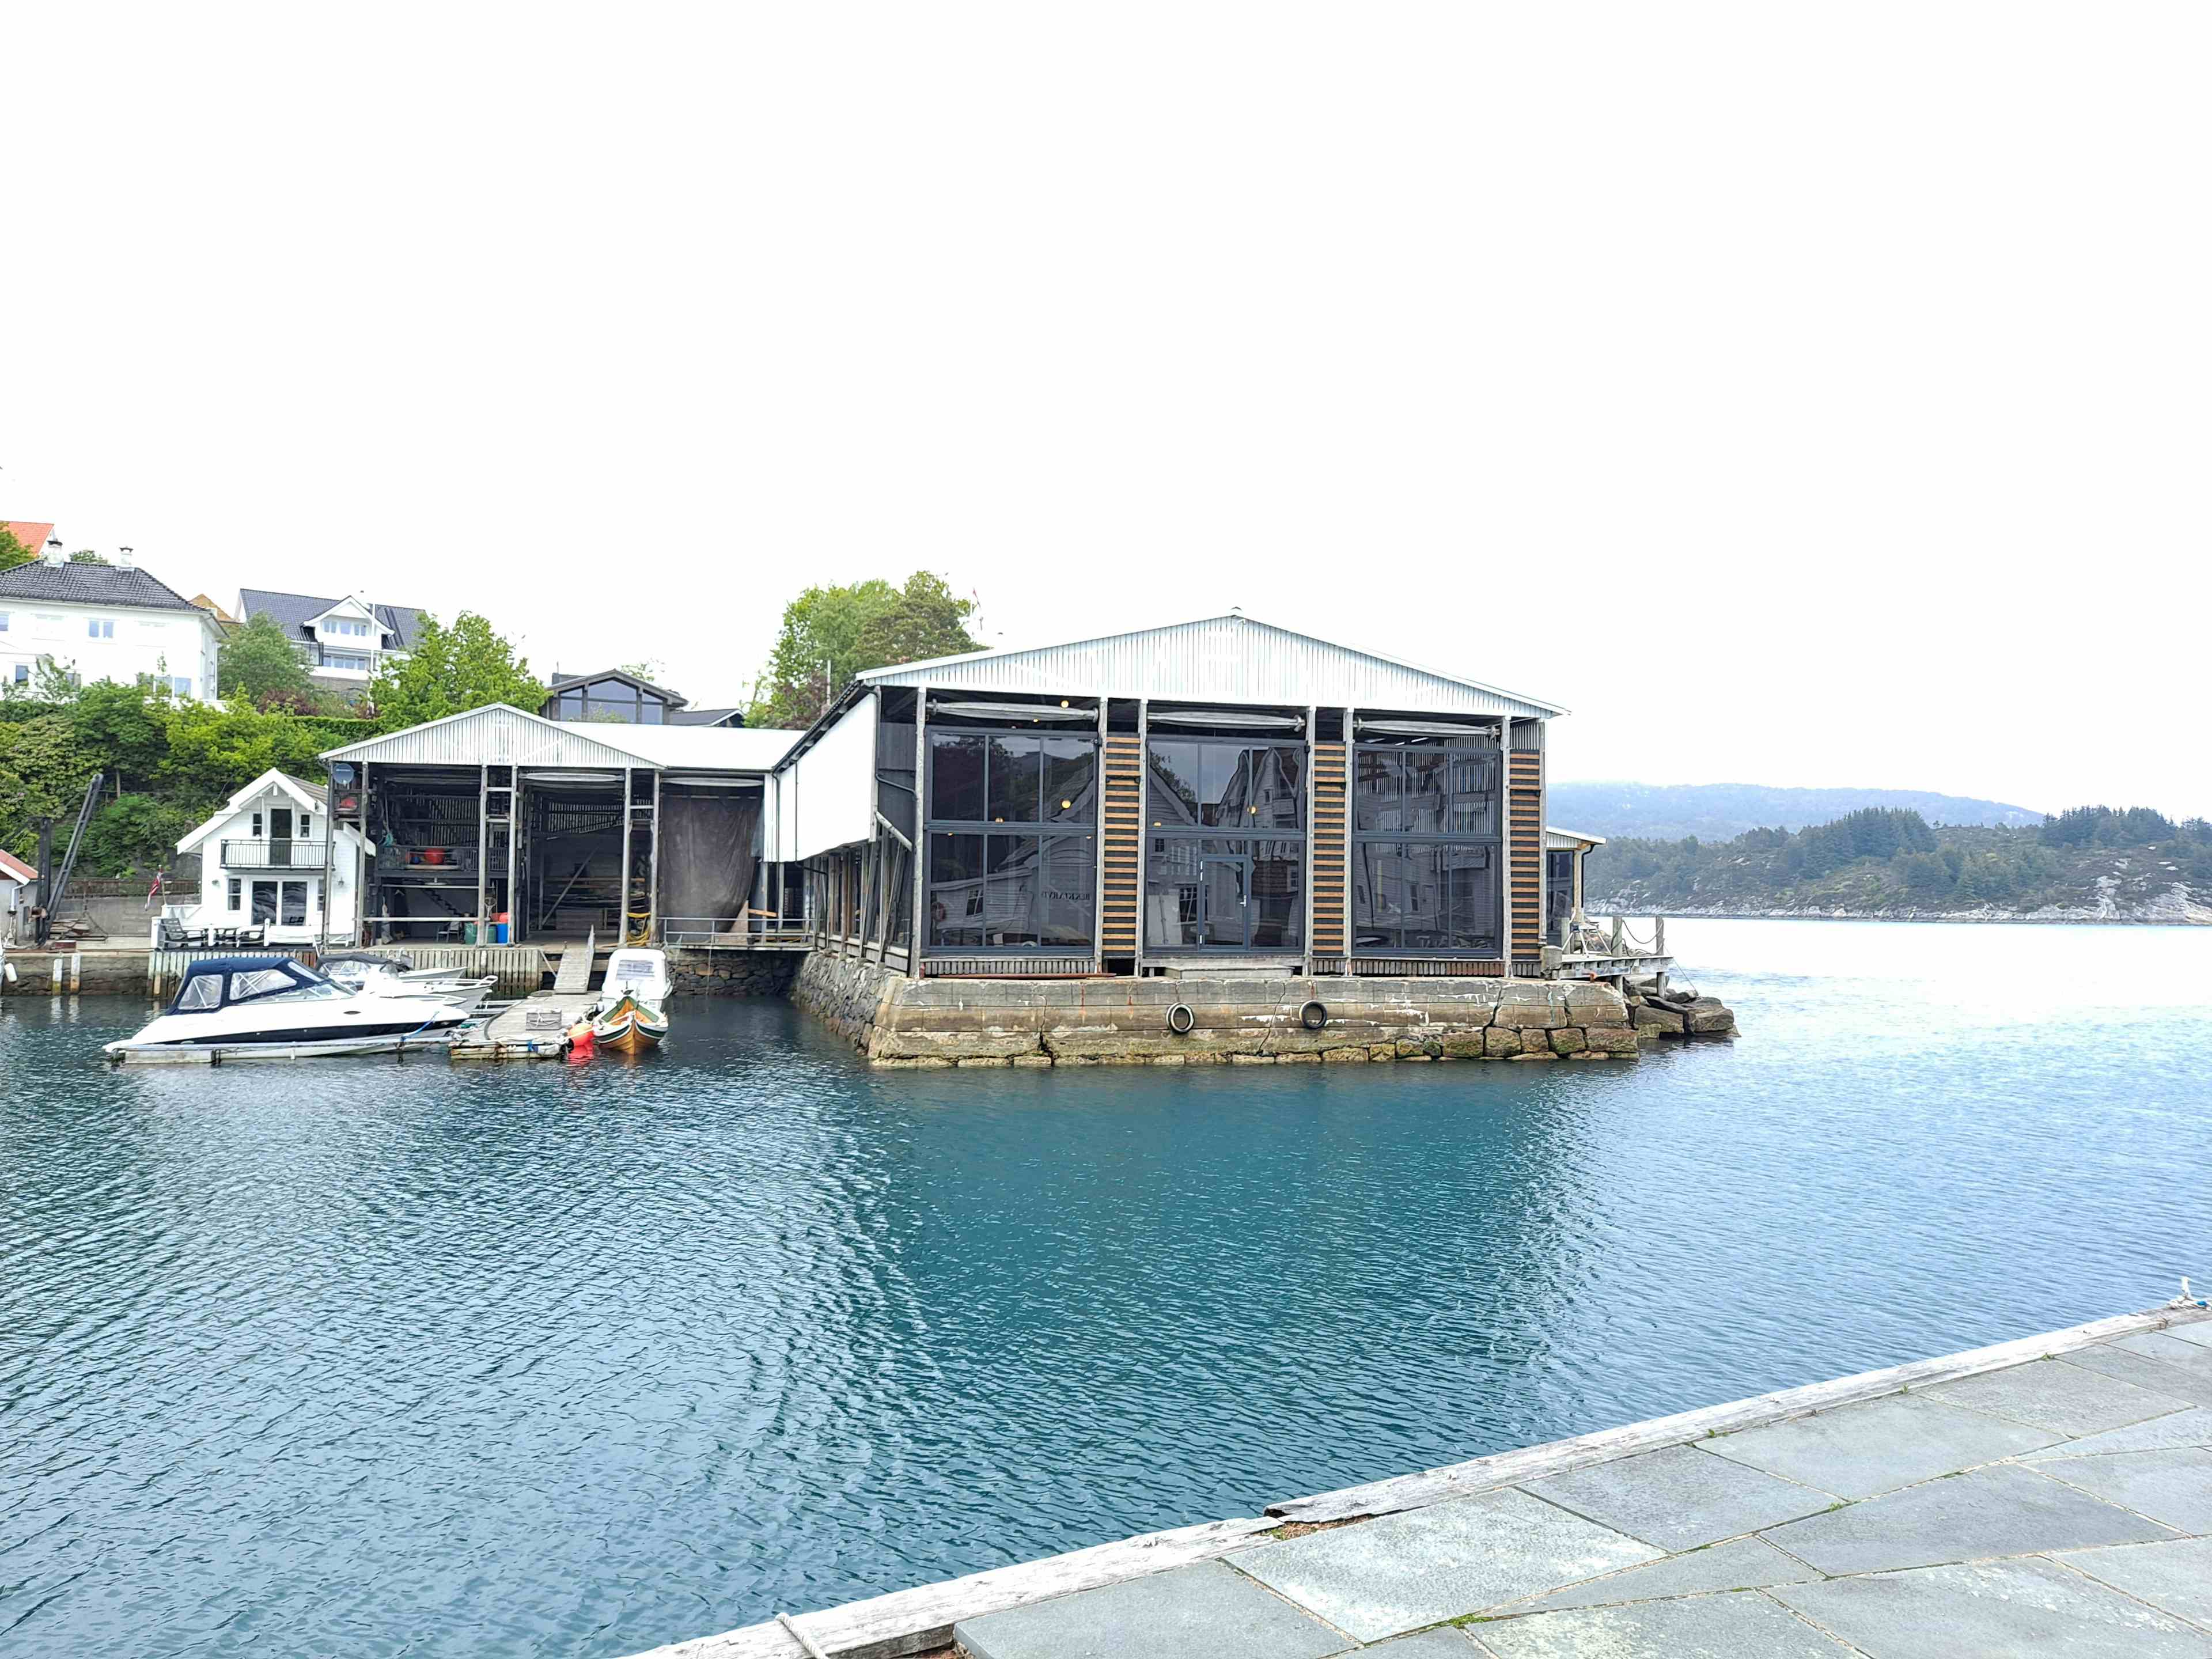 Historisk bygning ved sjø, båter, kai og hus.